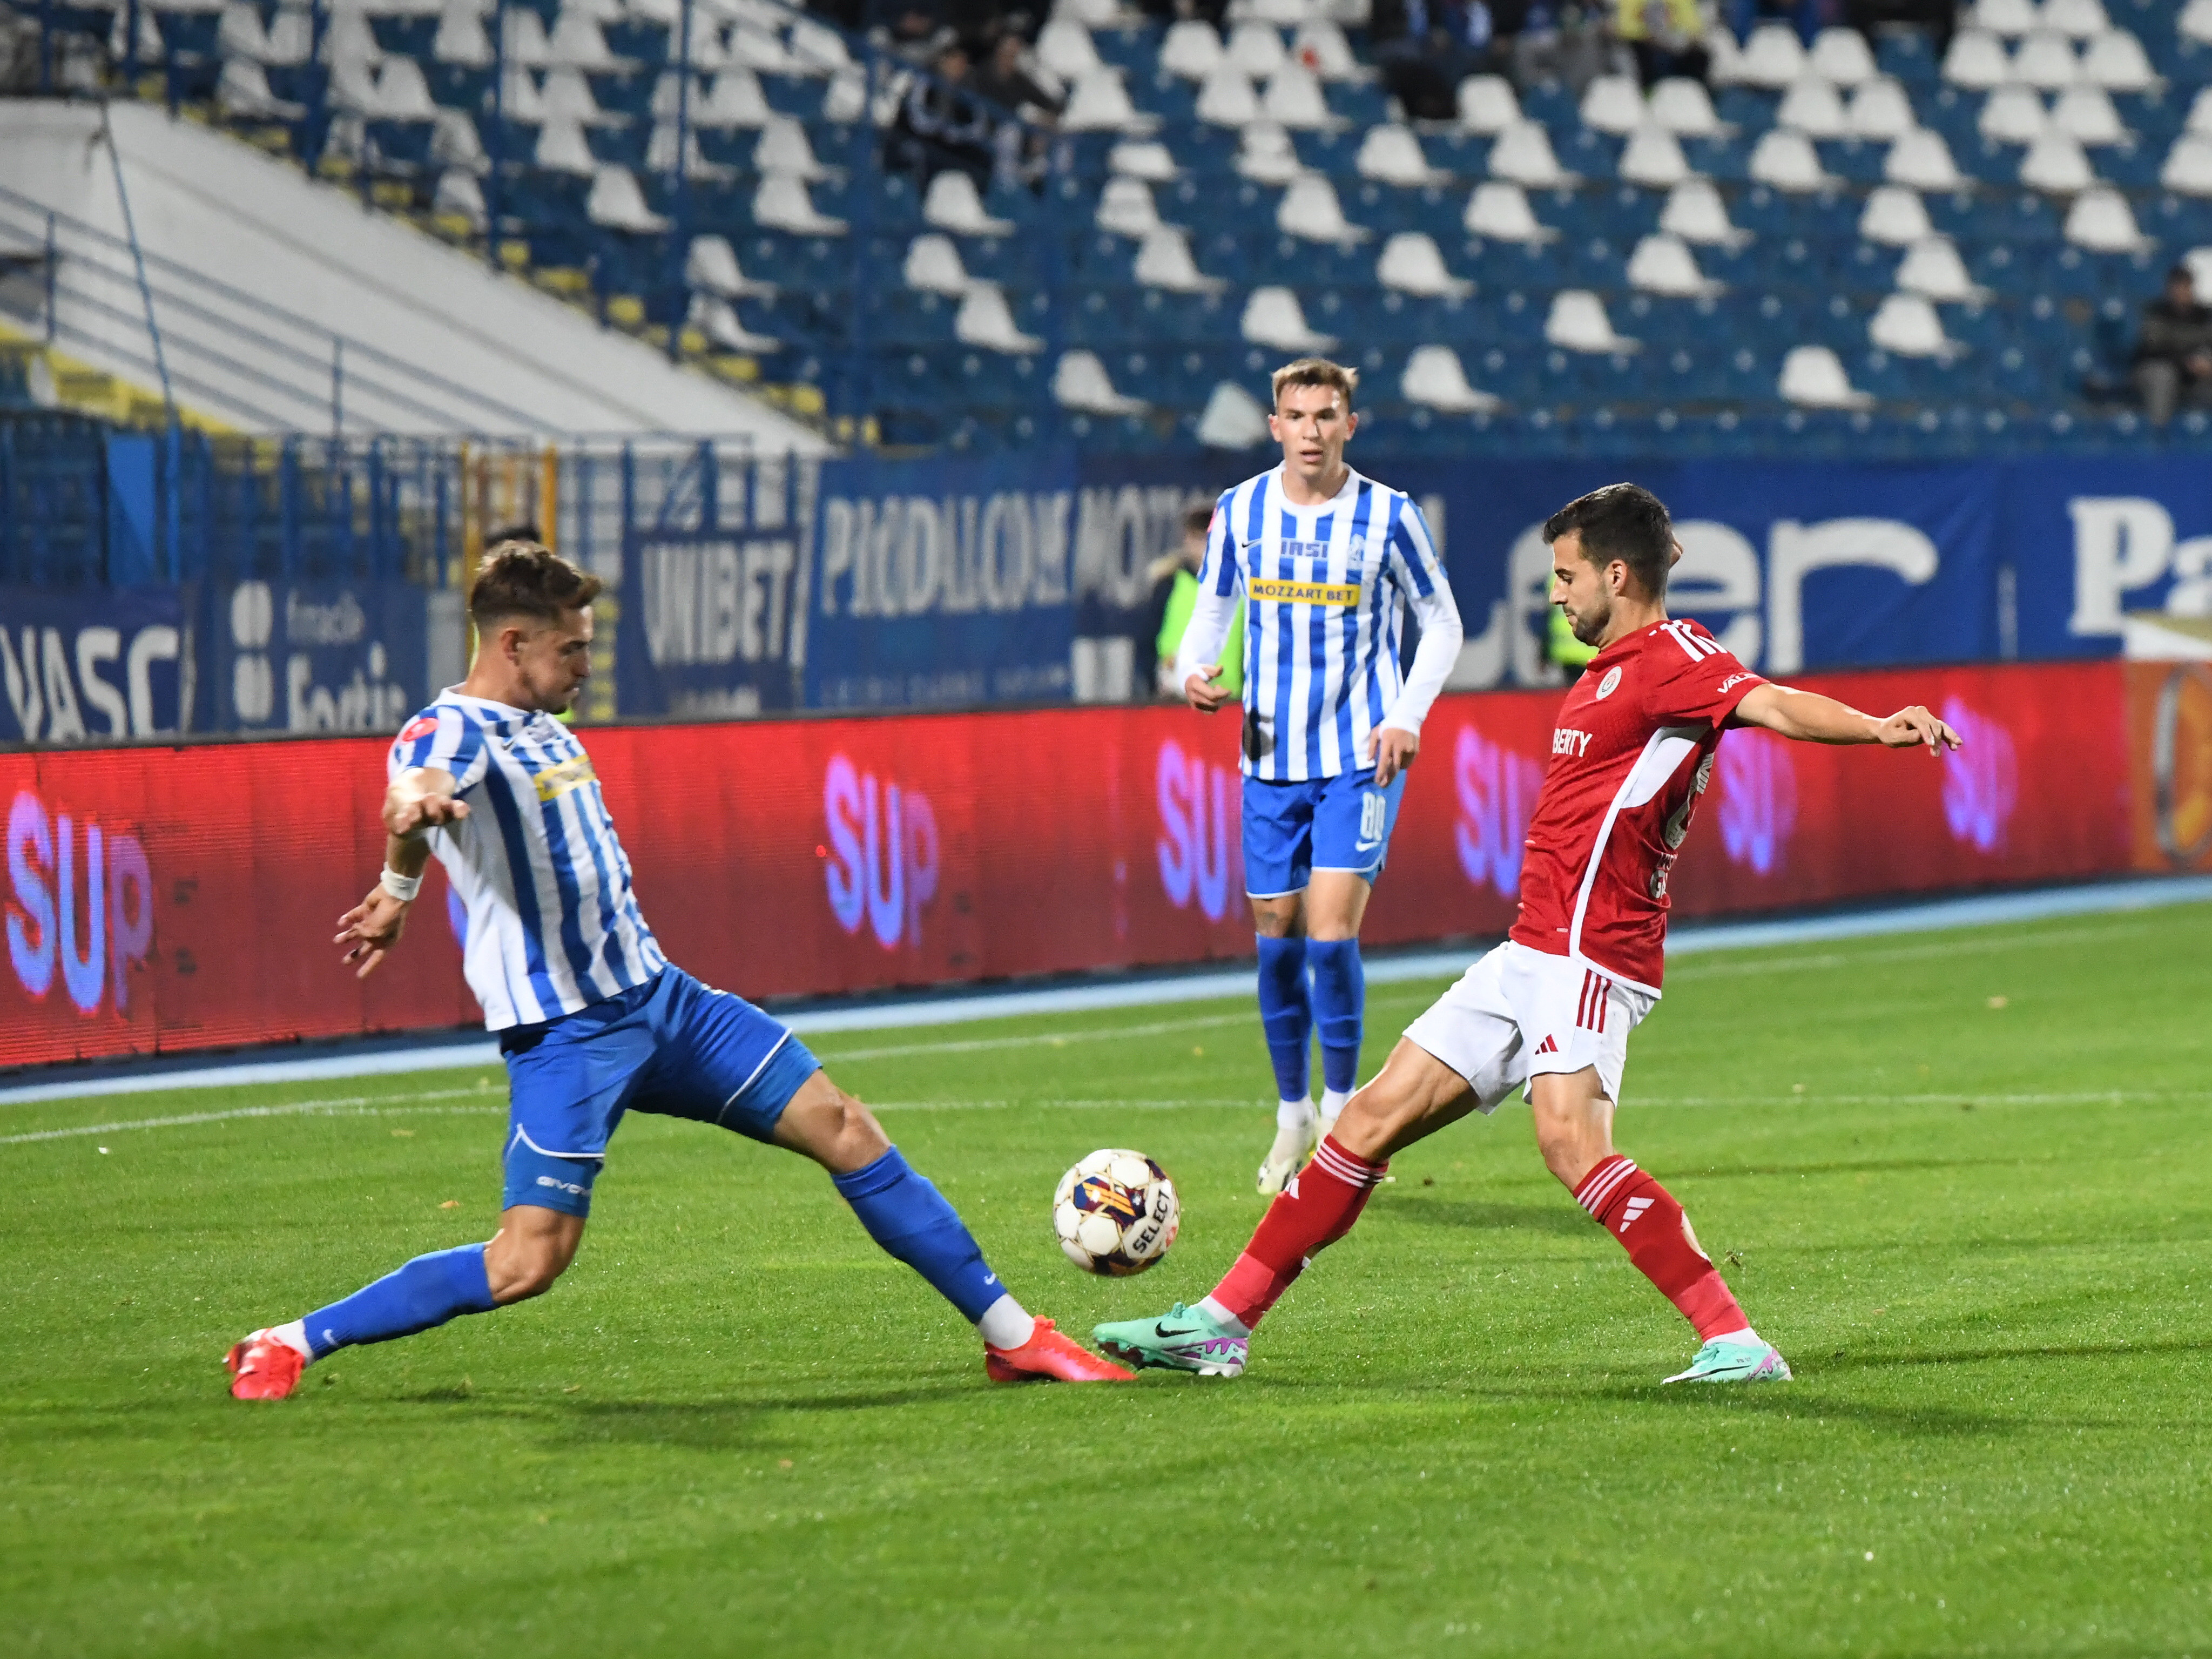 Oțelul - Poli Iași 1-0, ACUM, Digi Sport 1. Gazdele conduc la pauză, datorită reușitei semnate de Maciel